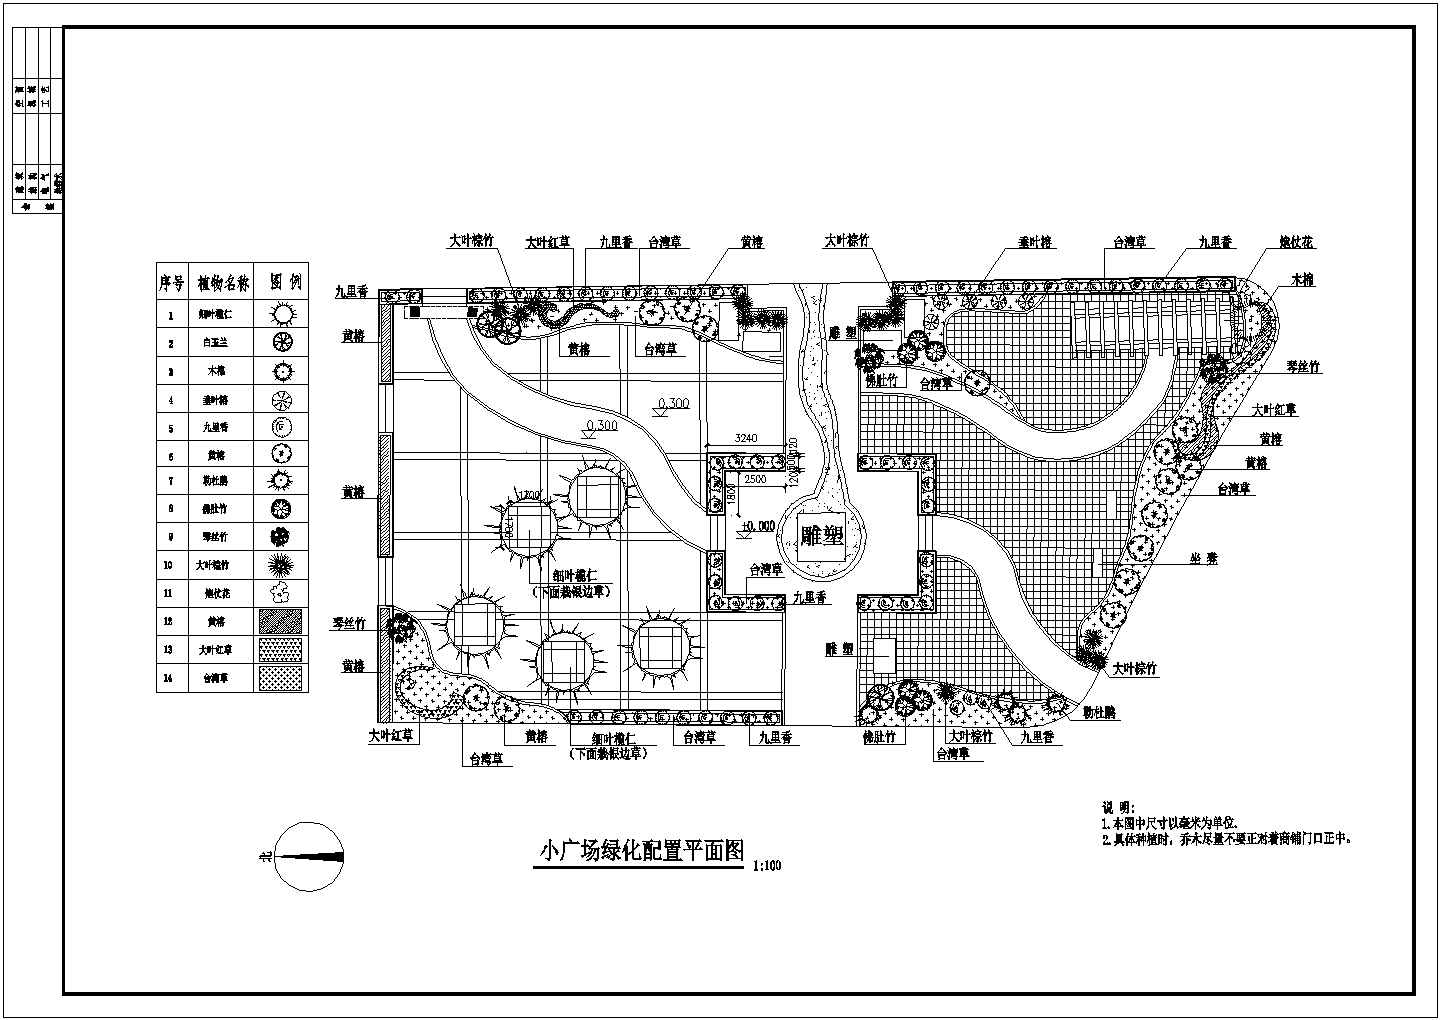 某景观园林小广场绿化设计cad配置平面图标注详细